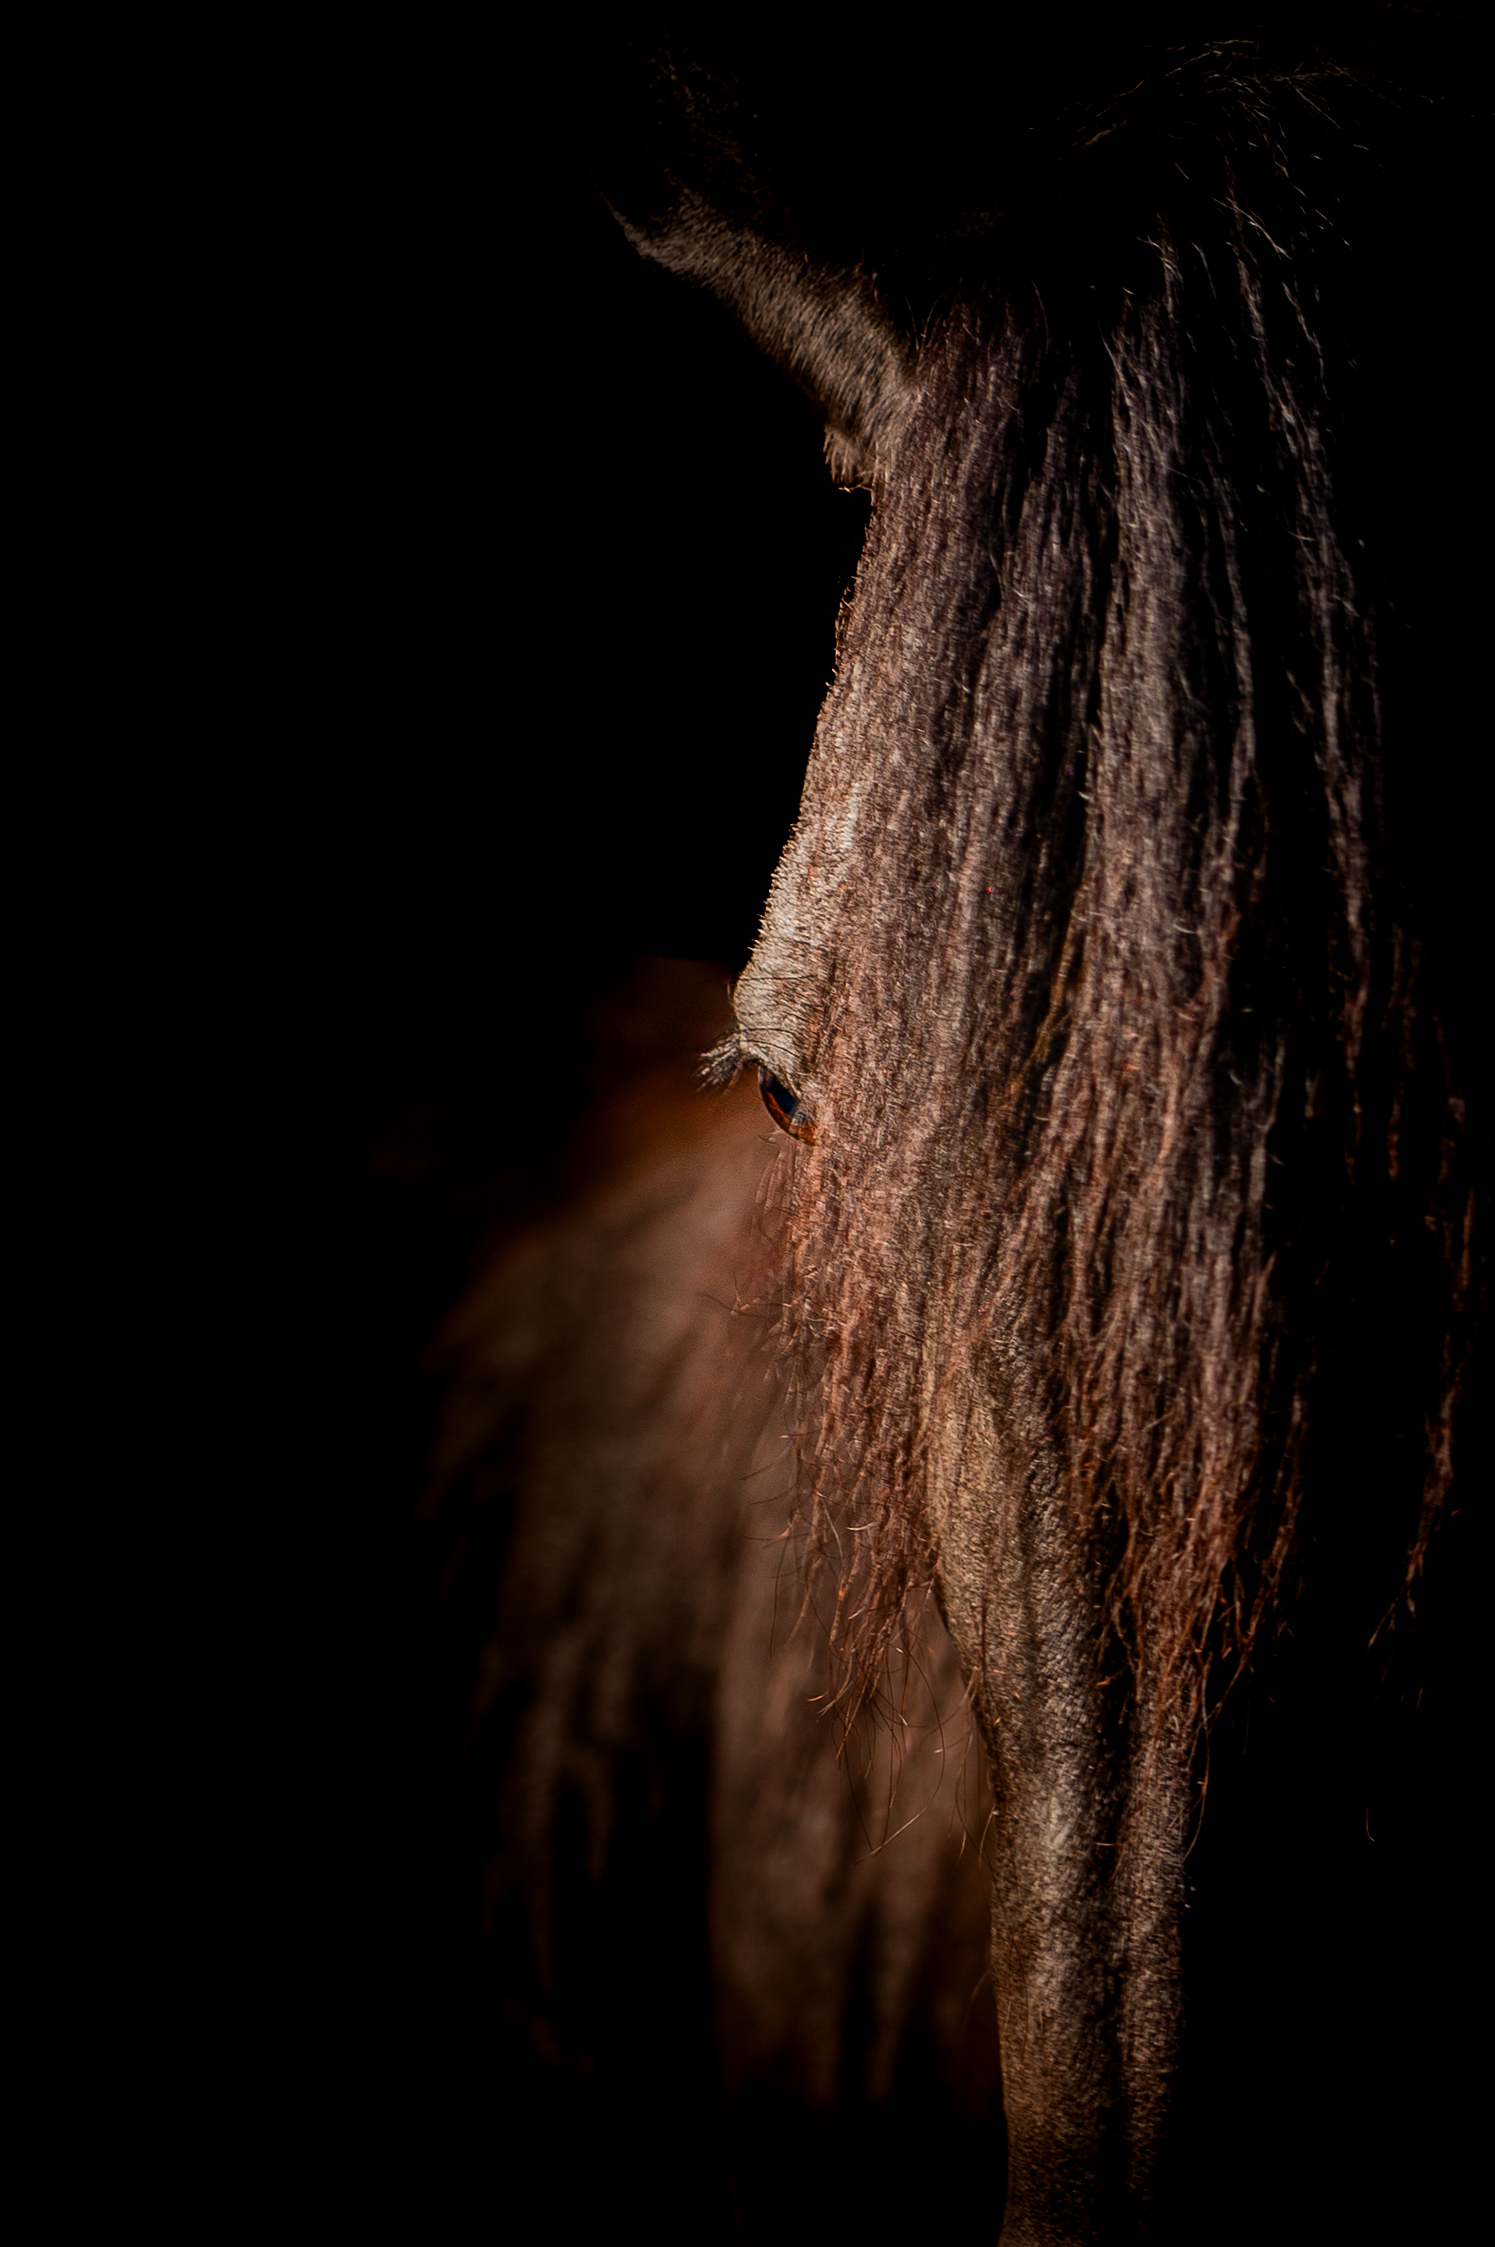 chevaux oeuvre d'art fond noir studio cheval paillette alsace lorraine grand est photographe professionnelle animalier beauté equestre équin horse photo bas rhin haut Rhin strasbourg nancy mulhouse colmar